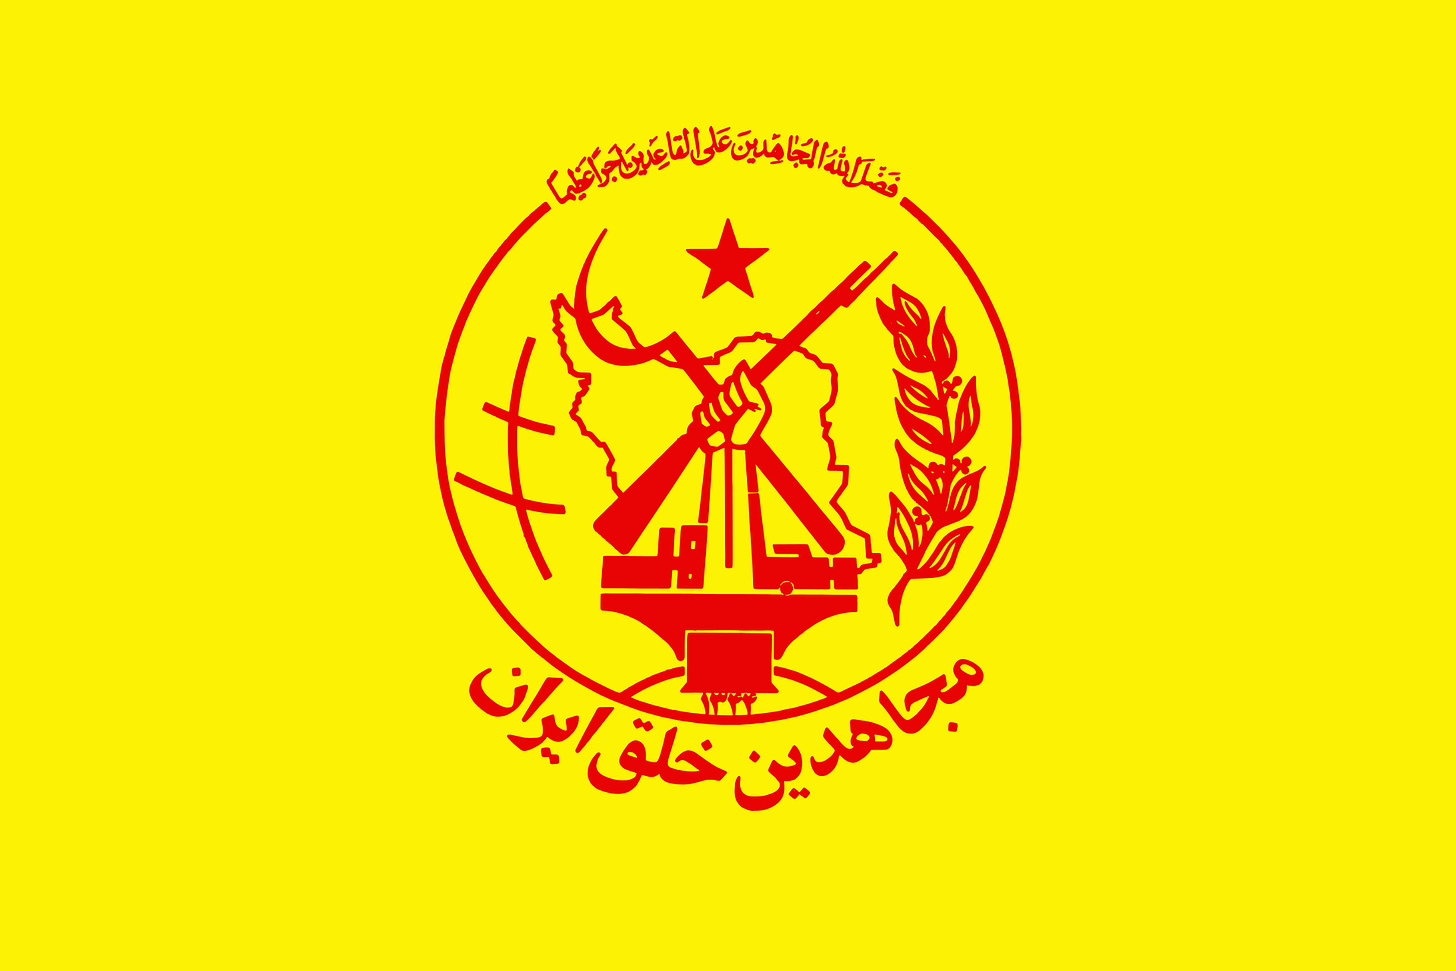 Puolueen nimi on suomennettuna “Iranin Kansan jihadistinen järjestö” ja se seuraa marxismin lisäksi shia-islamismia.